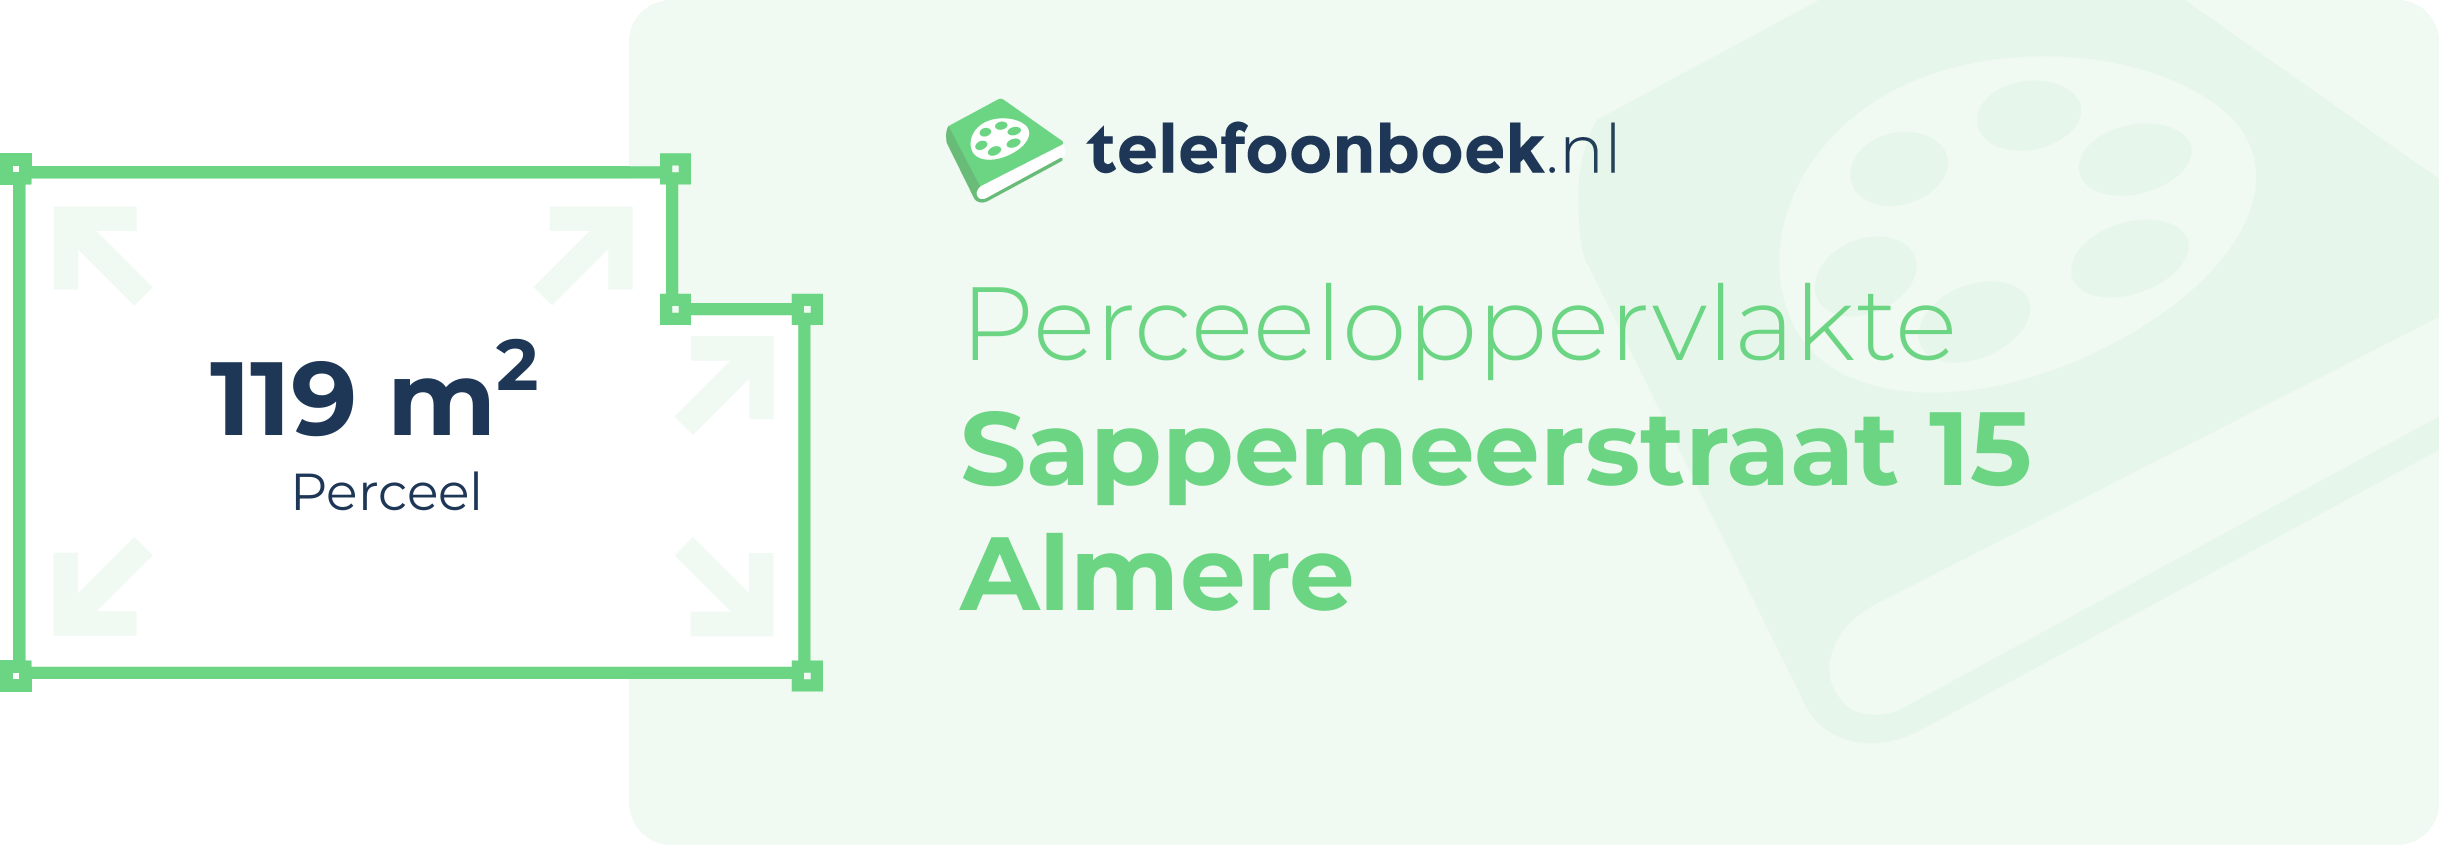 Perceeloppervlakte Sappemeerstraat 15 Almere